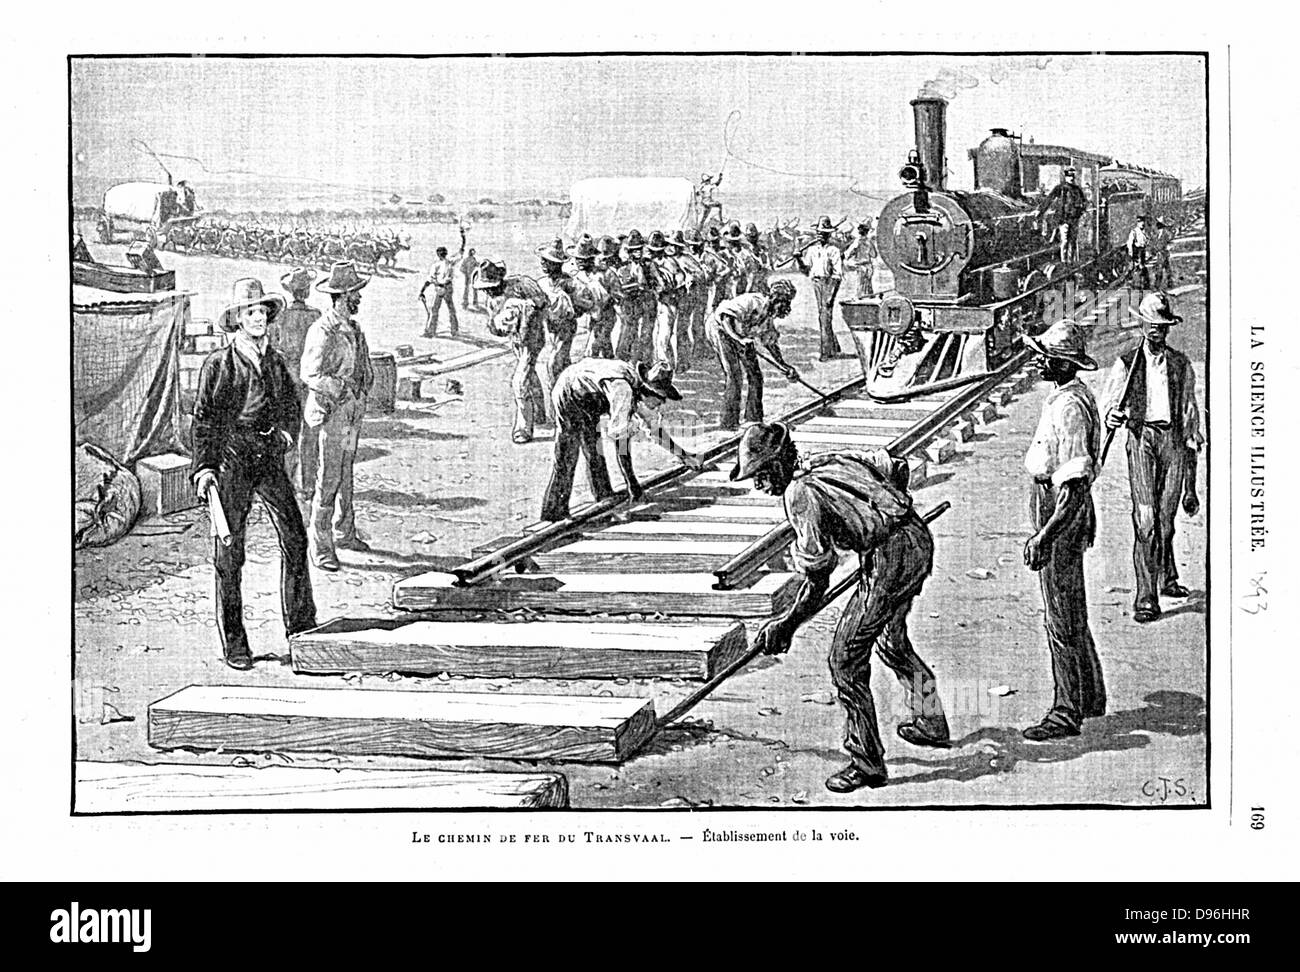 Pose des rails et traverses (permanente) sur le chemin de fer, de l'Afrique.' Paris 1893 Illustration publié Banque D'Images